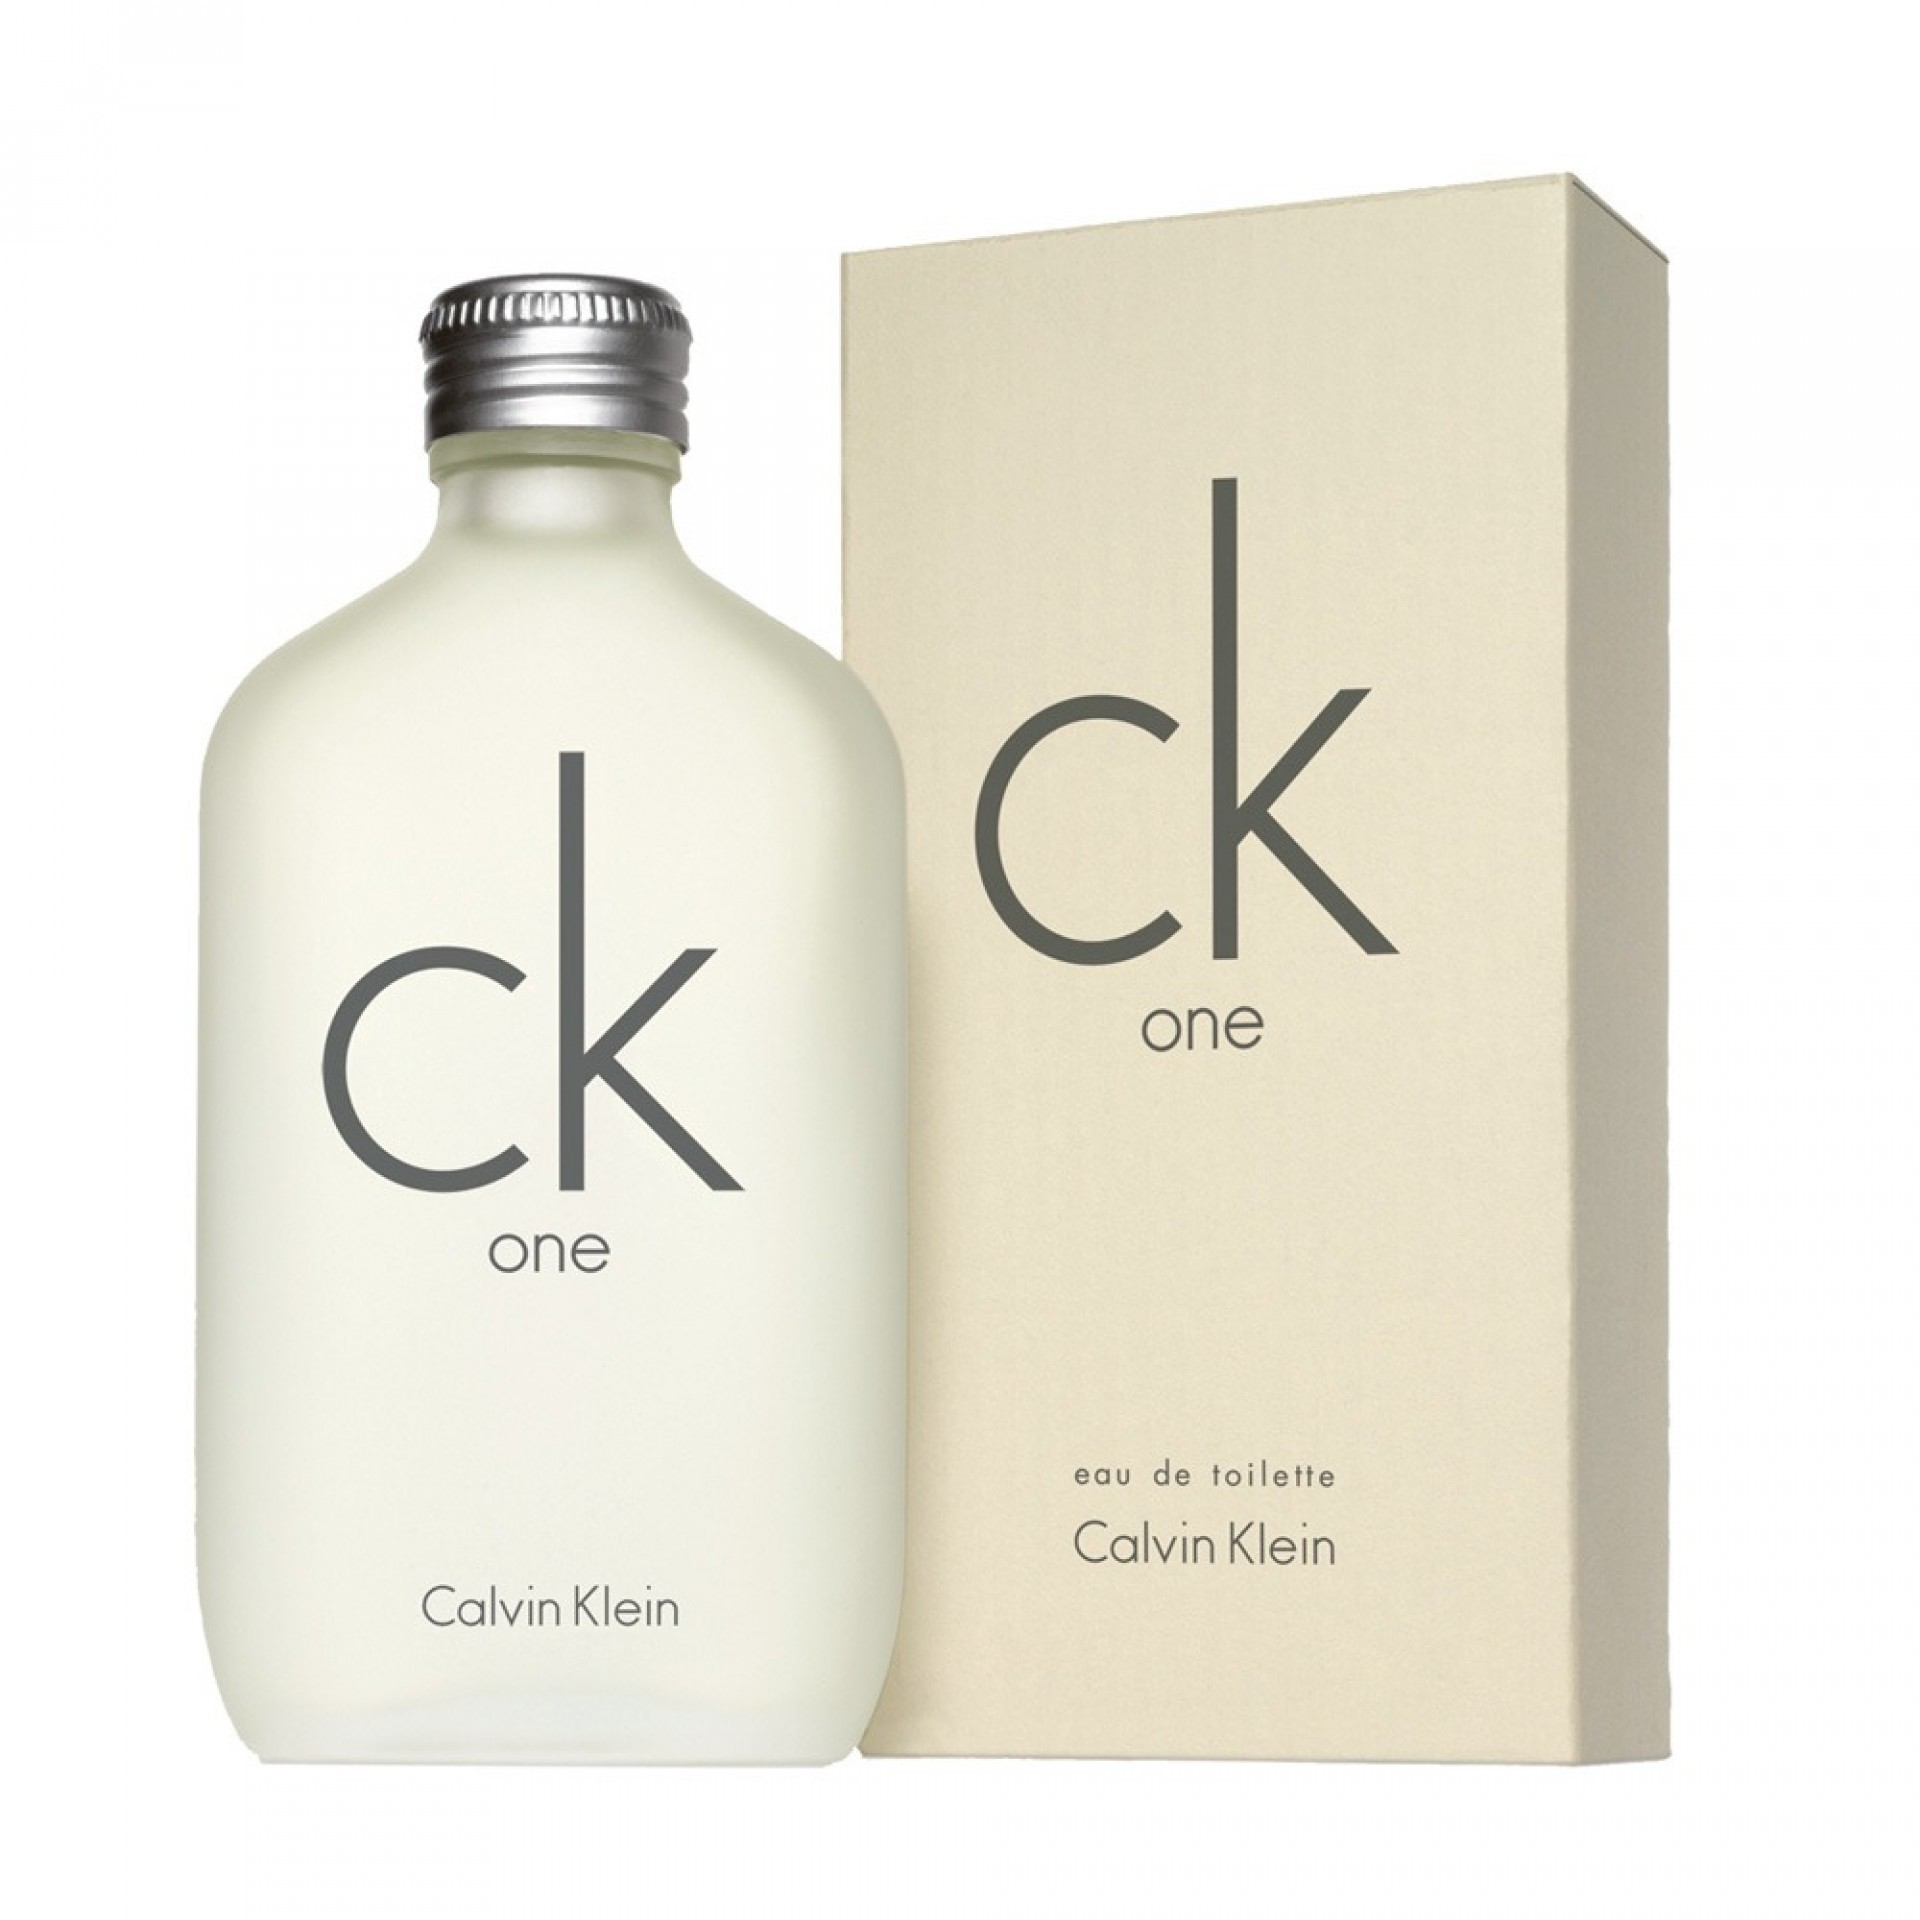 Купить Туалетная вода Calvin Klein, Calvin Klein Ck One 100ml, США